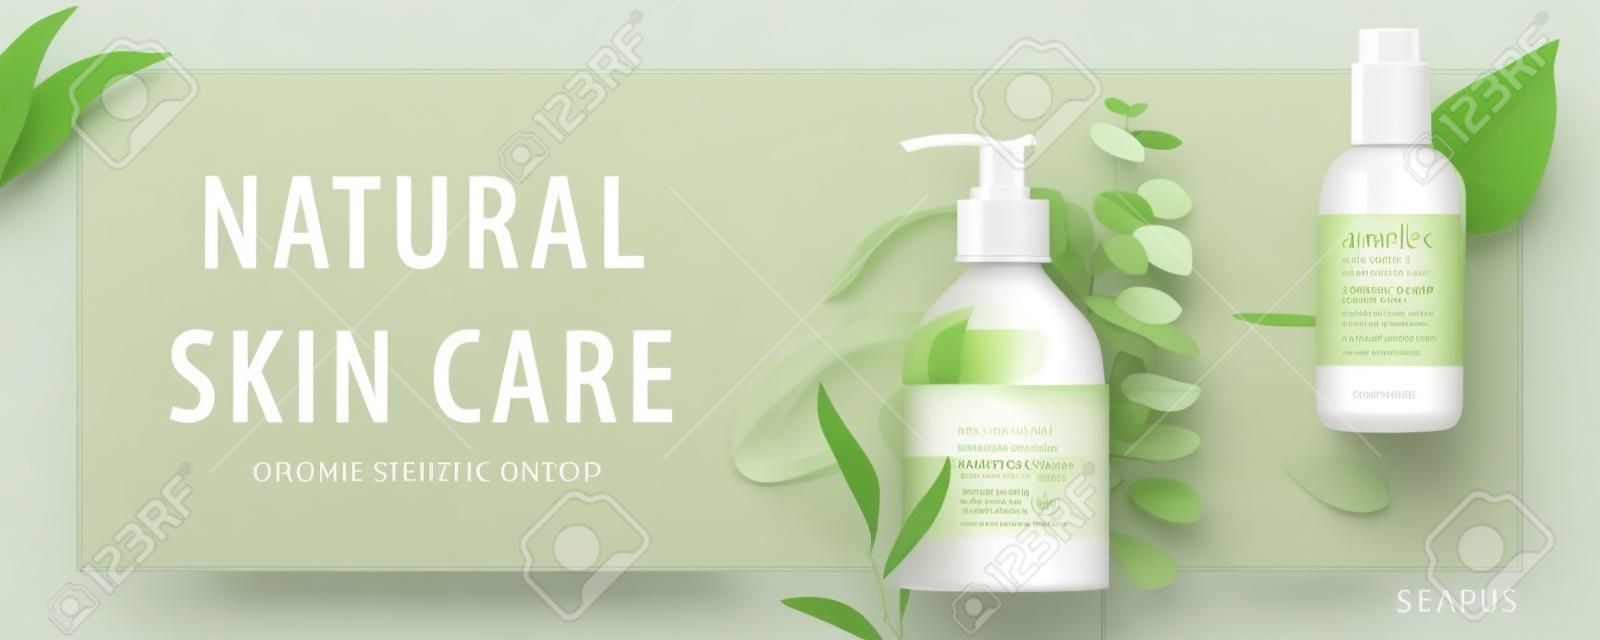 Banner de anúncio para produtos de beleza simples, mock-ups decorados com folhas naturais e traços de creme, conceito de cuidados com a pele orgânicos, ilustração 3d